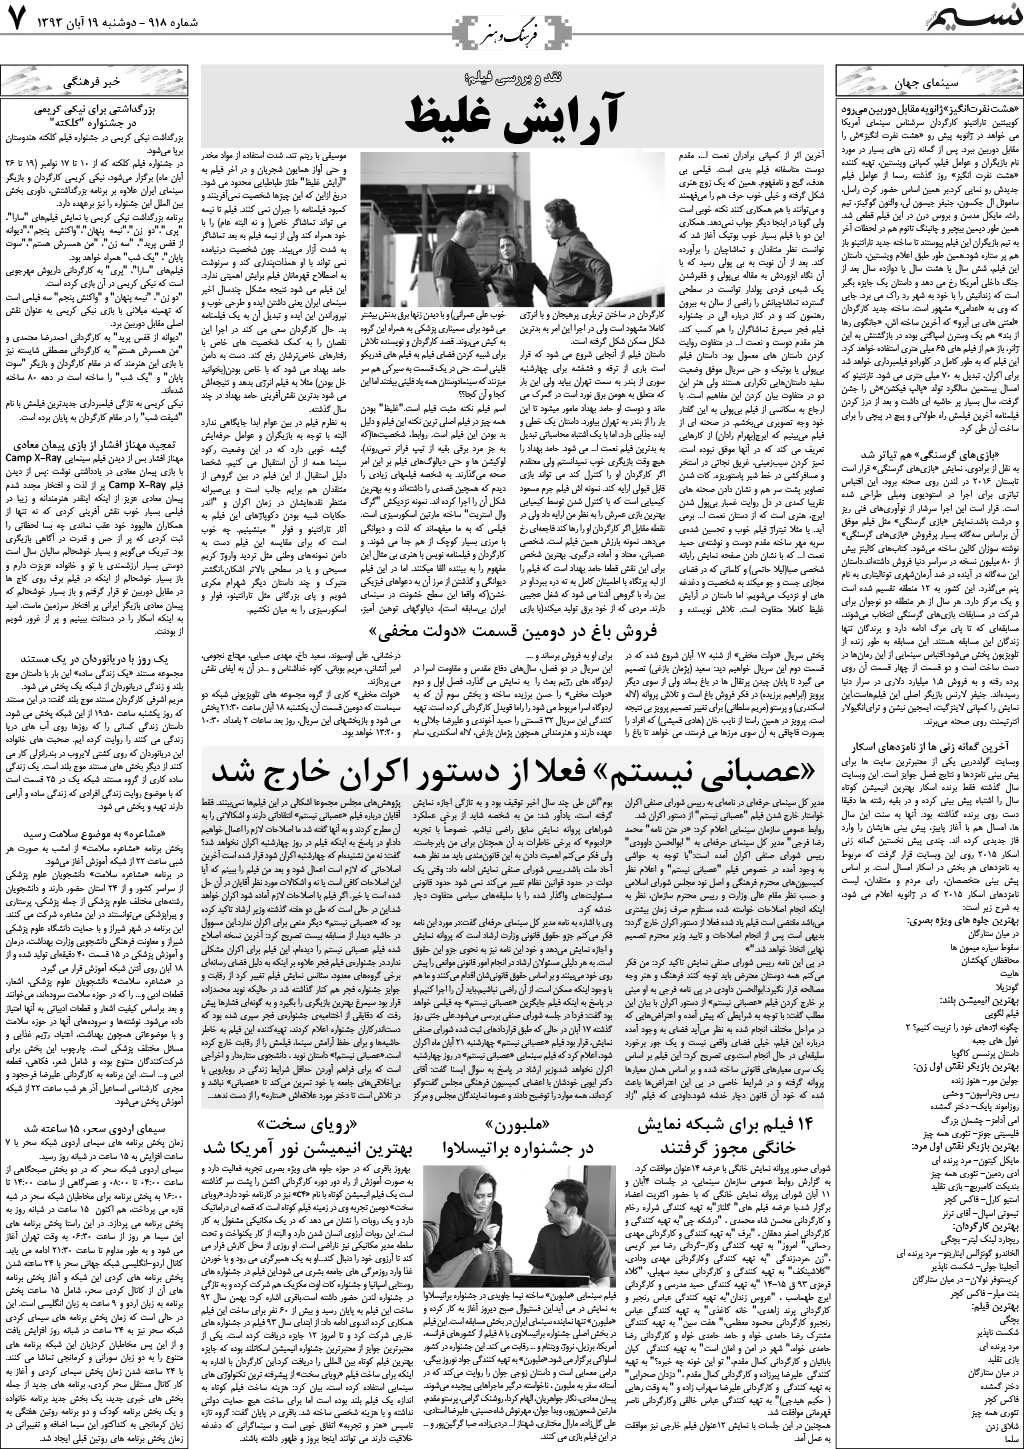 صفحه فرهنگ و هنر روزنامه نسیم شماره 918